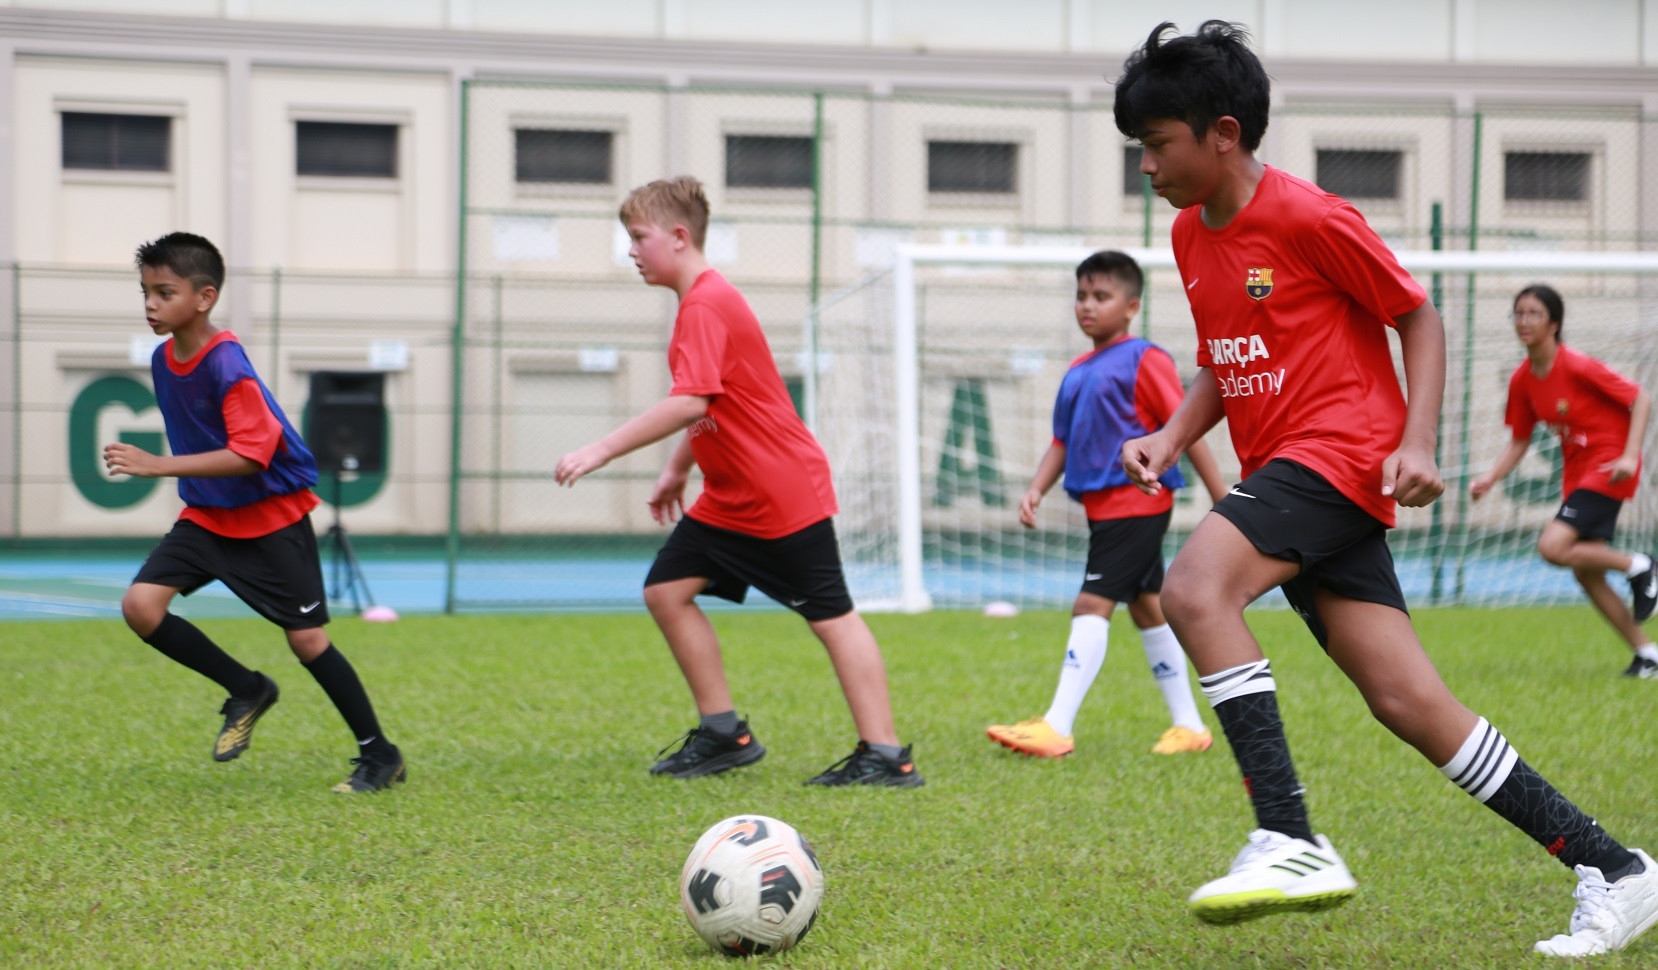 Barca Academy returns to Dhaka for second season